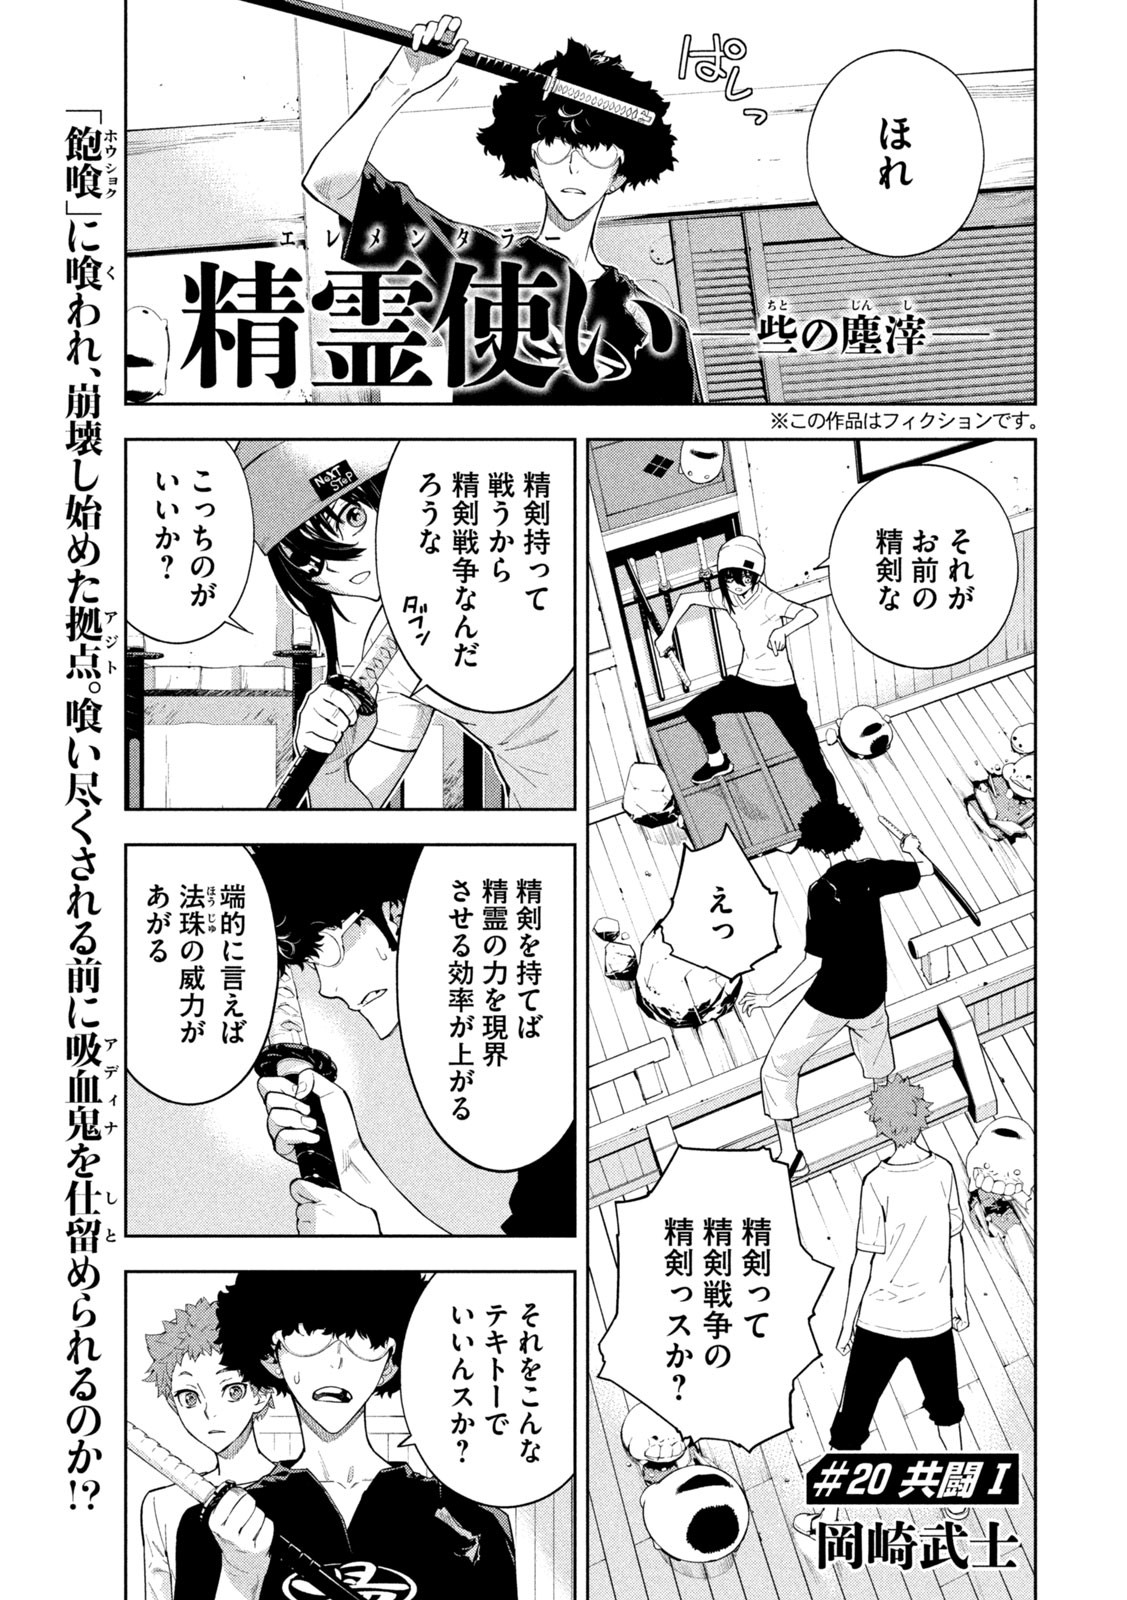 Seirei Tsukai – Chito no Jinshi - Chapter 20 - Page 1